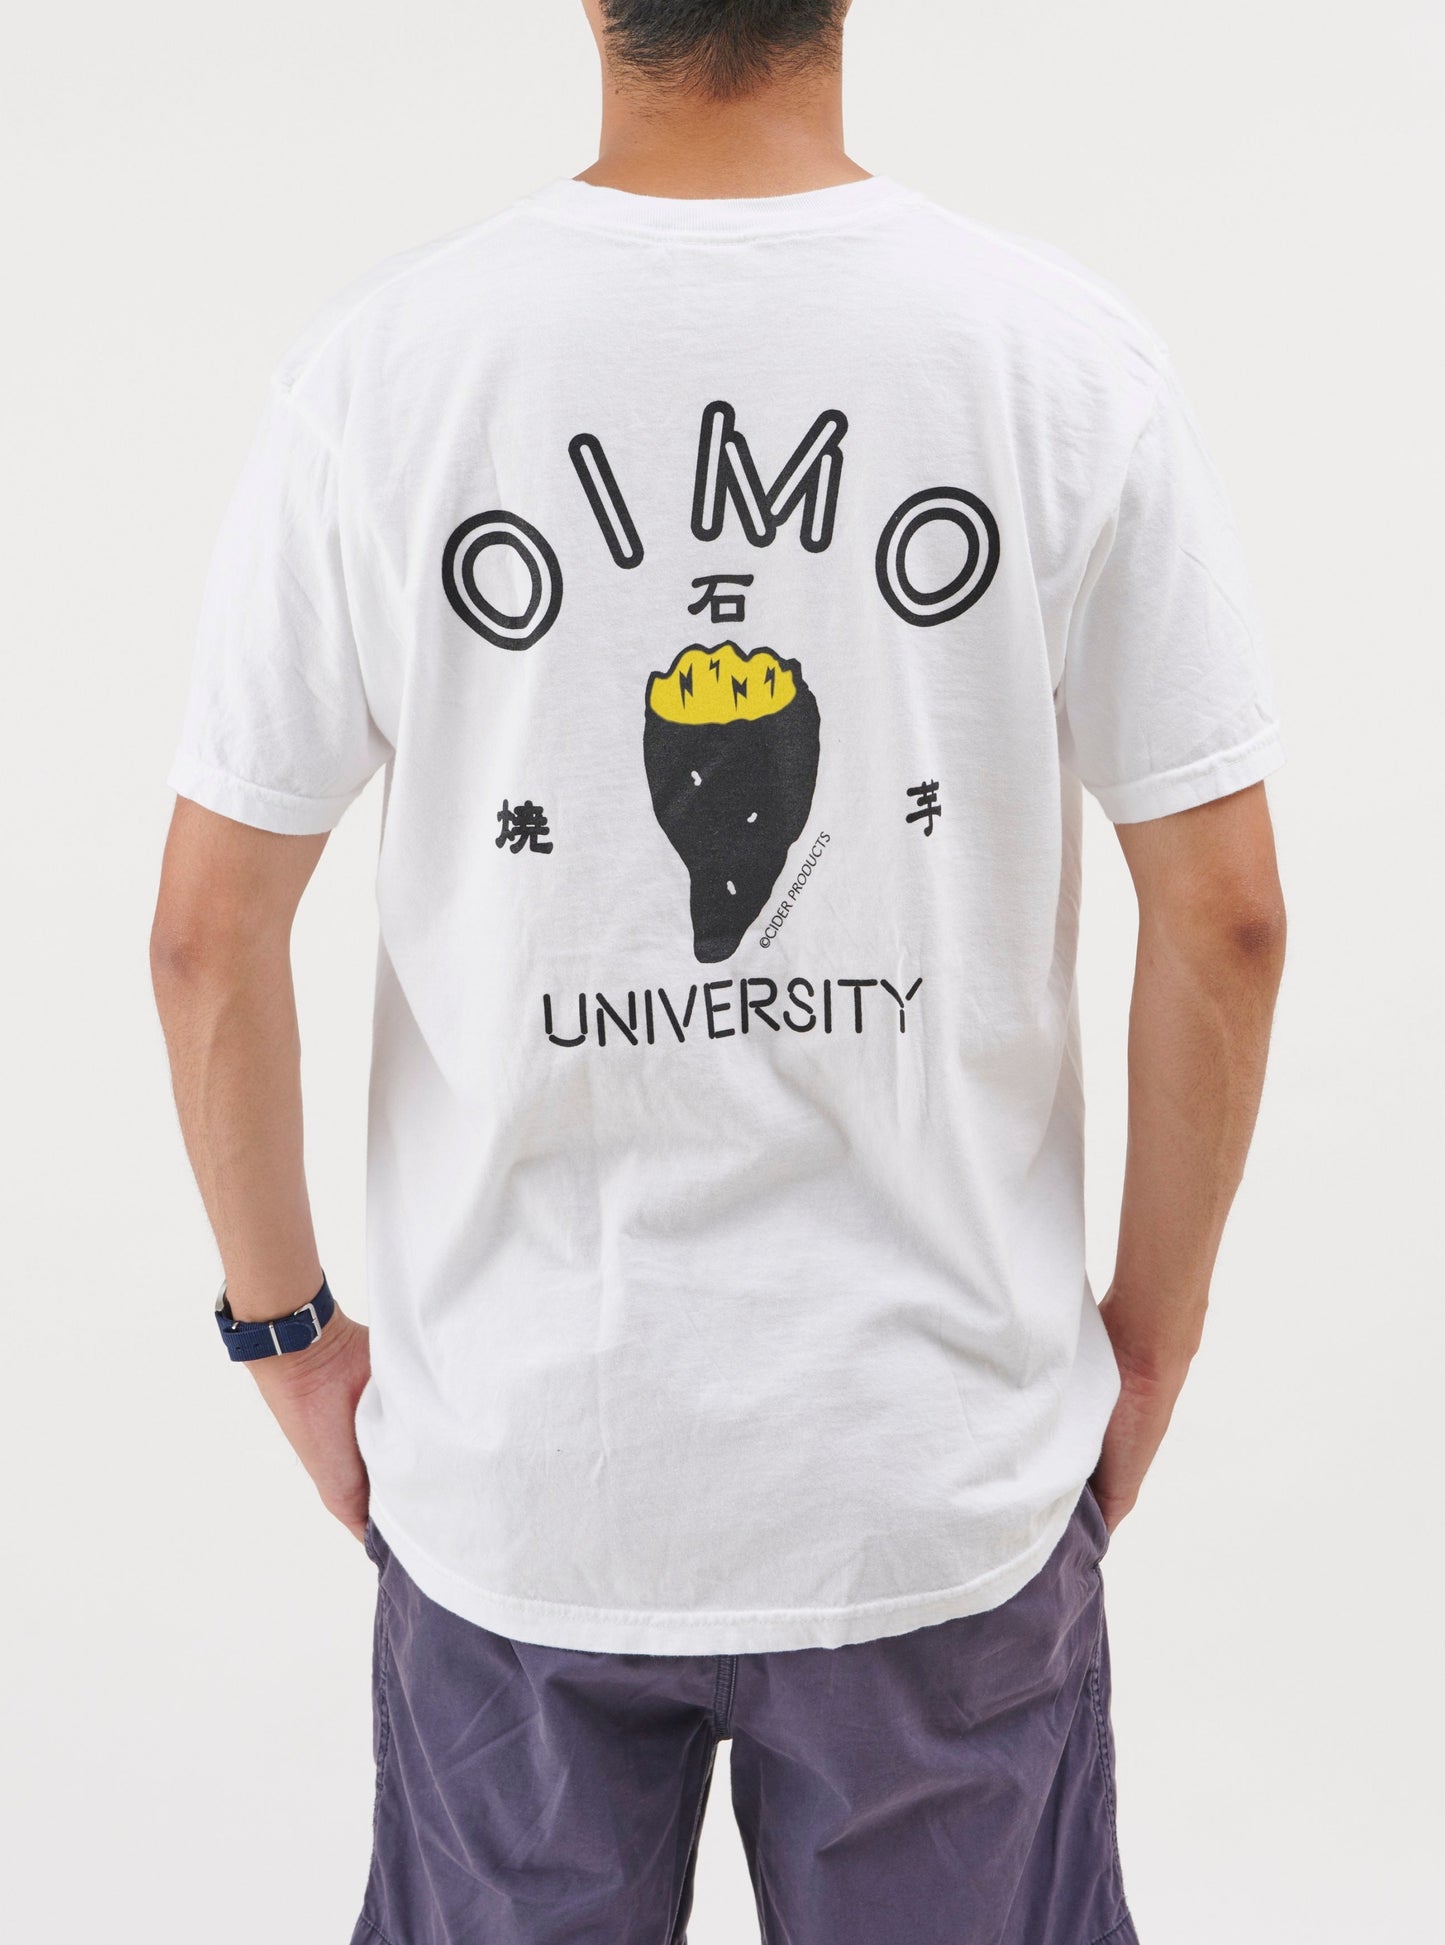 OIMO UNIV. Tshirt / ホワイト